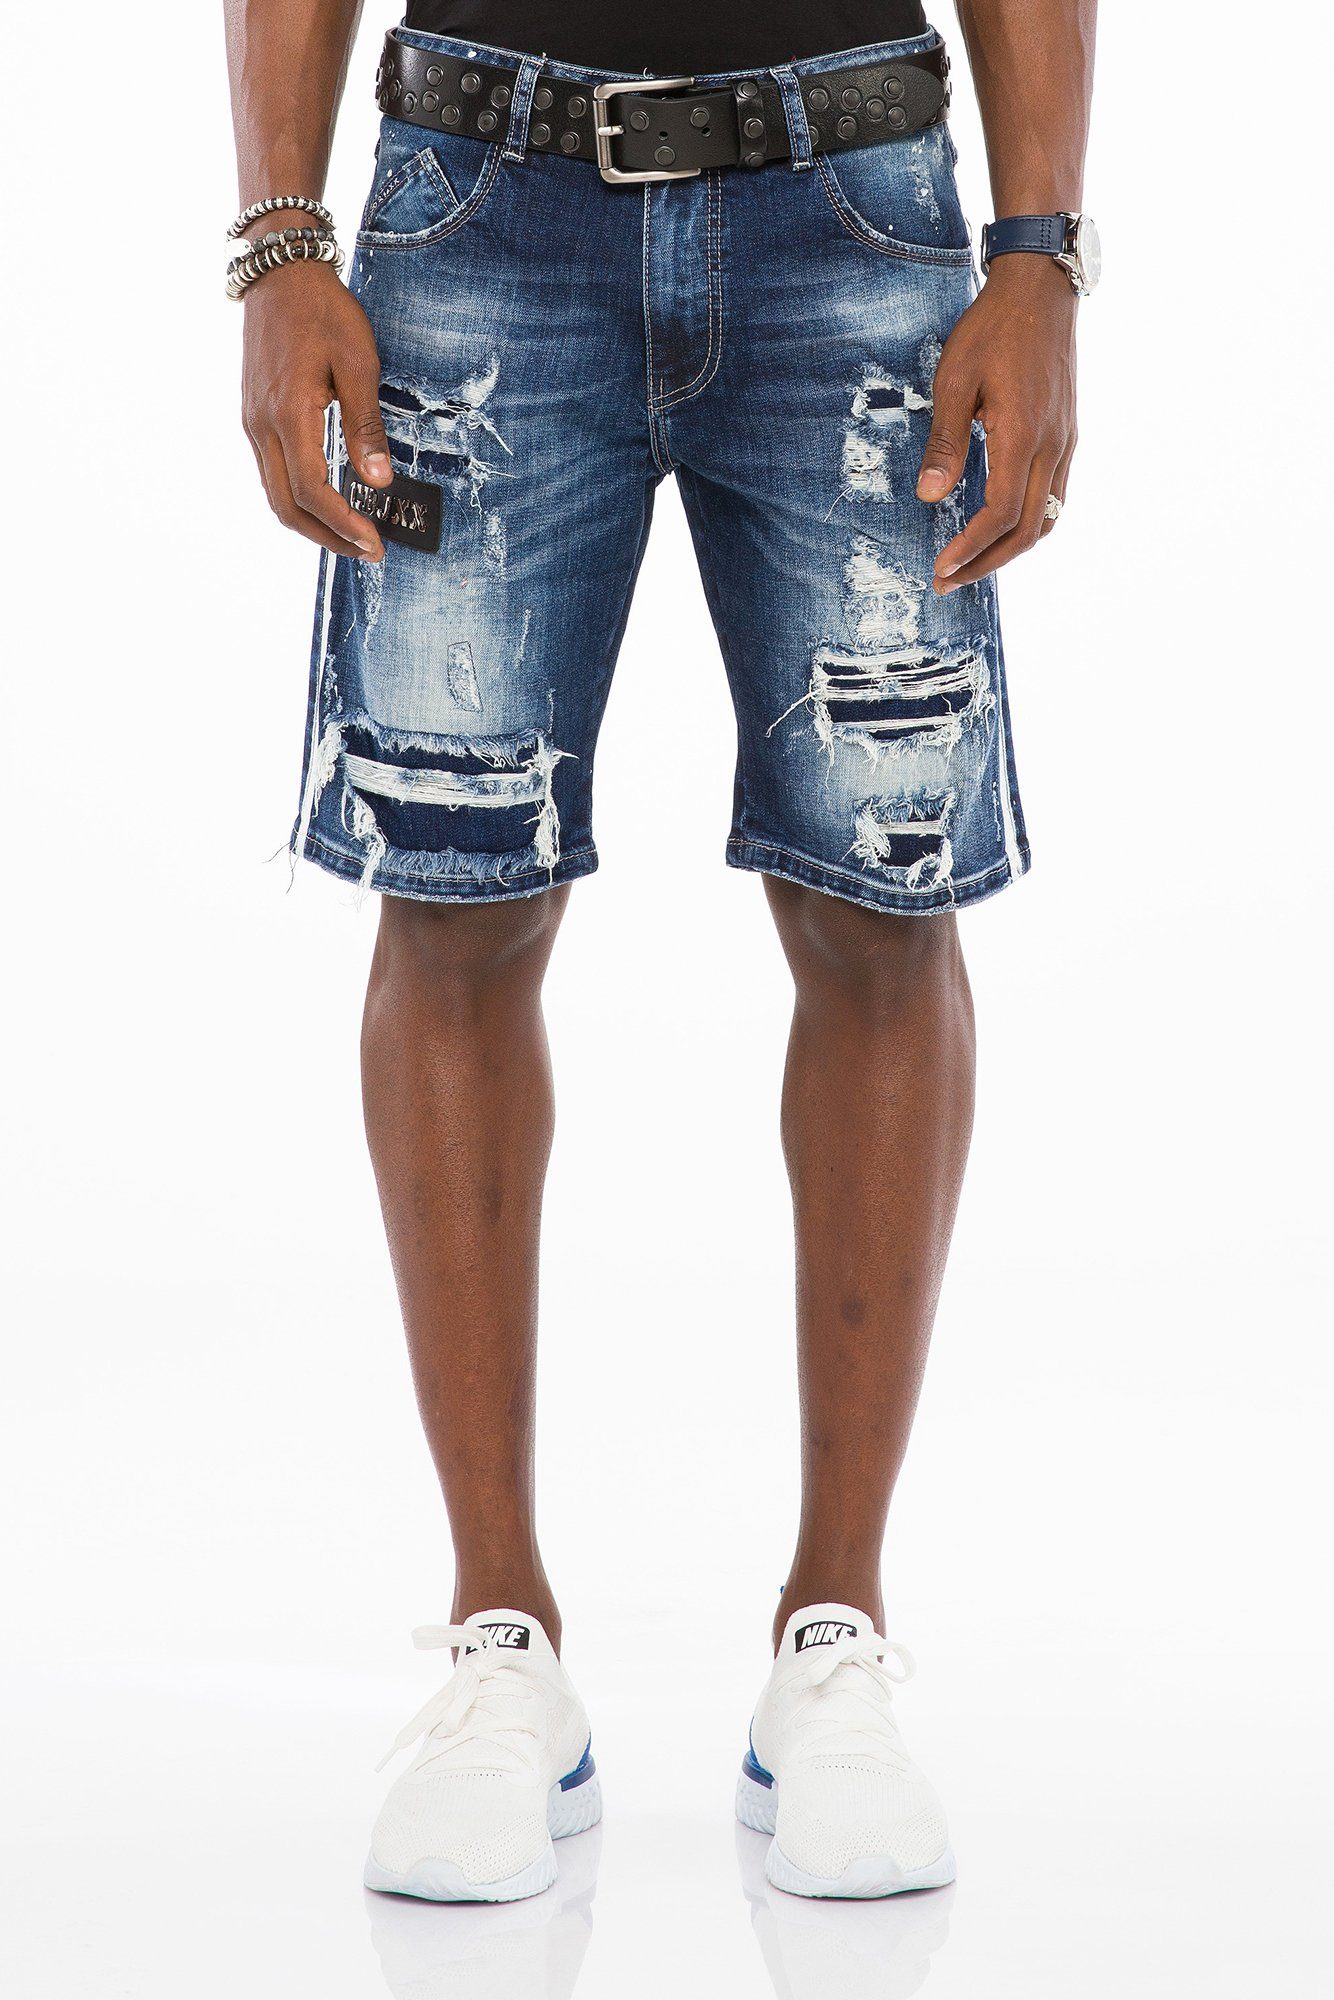 Cipo & Baxx Shorts im modischen Destroyed-Look | Shorts